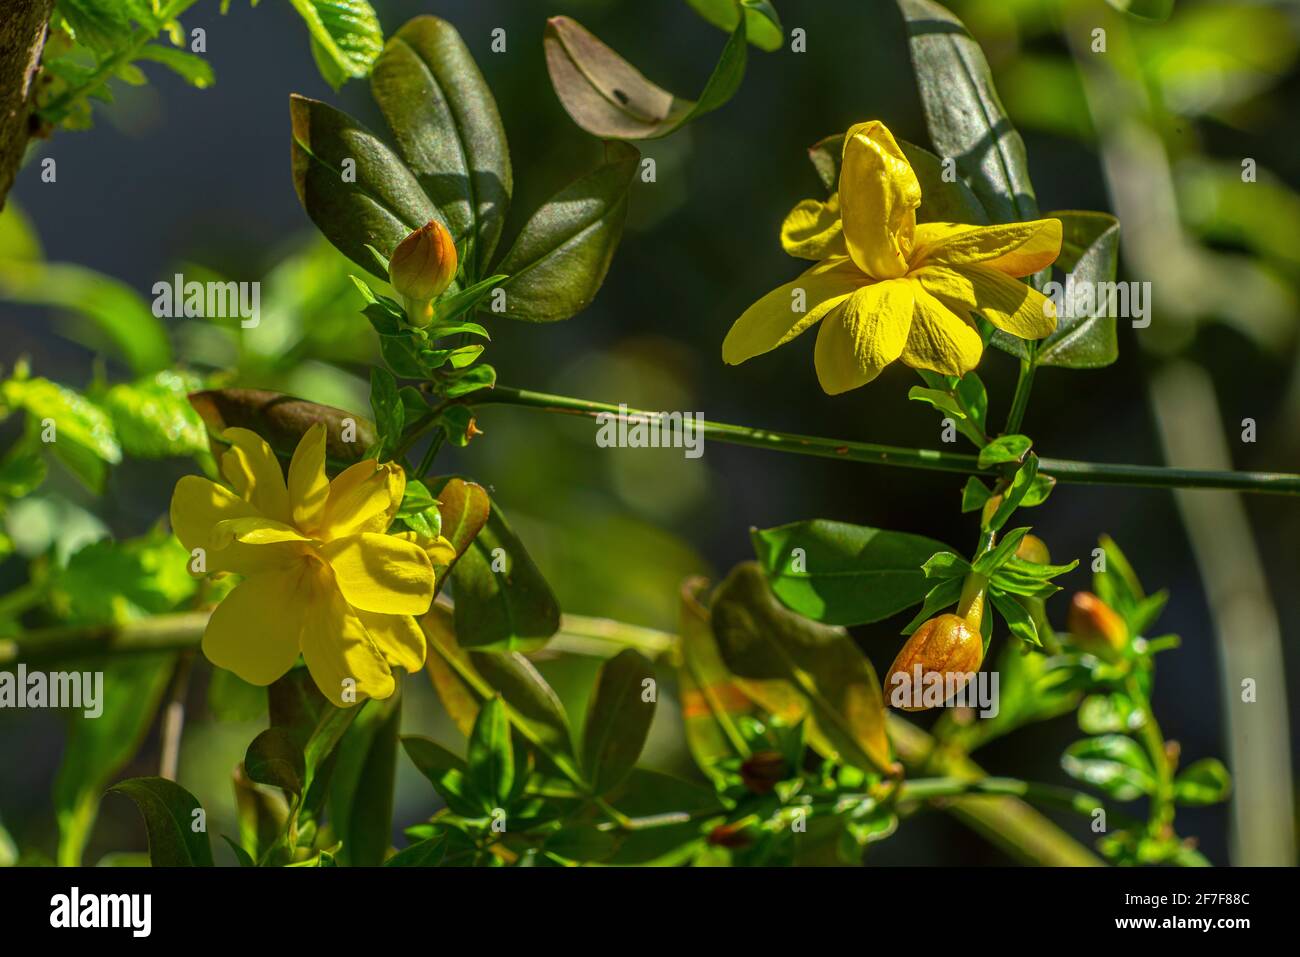 Blüten und Knospen der Jasminpflanze Jasminum mesnyi Hance, die von einer Frühlingssonne beleuchtet wird. Abruzzen, Italien, Europa Stockfoto